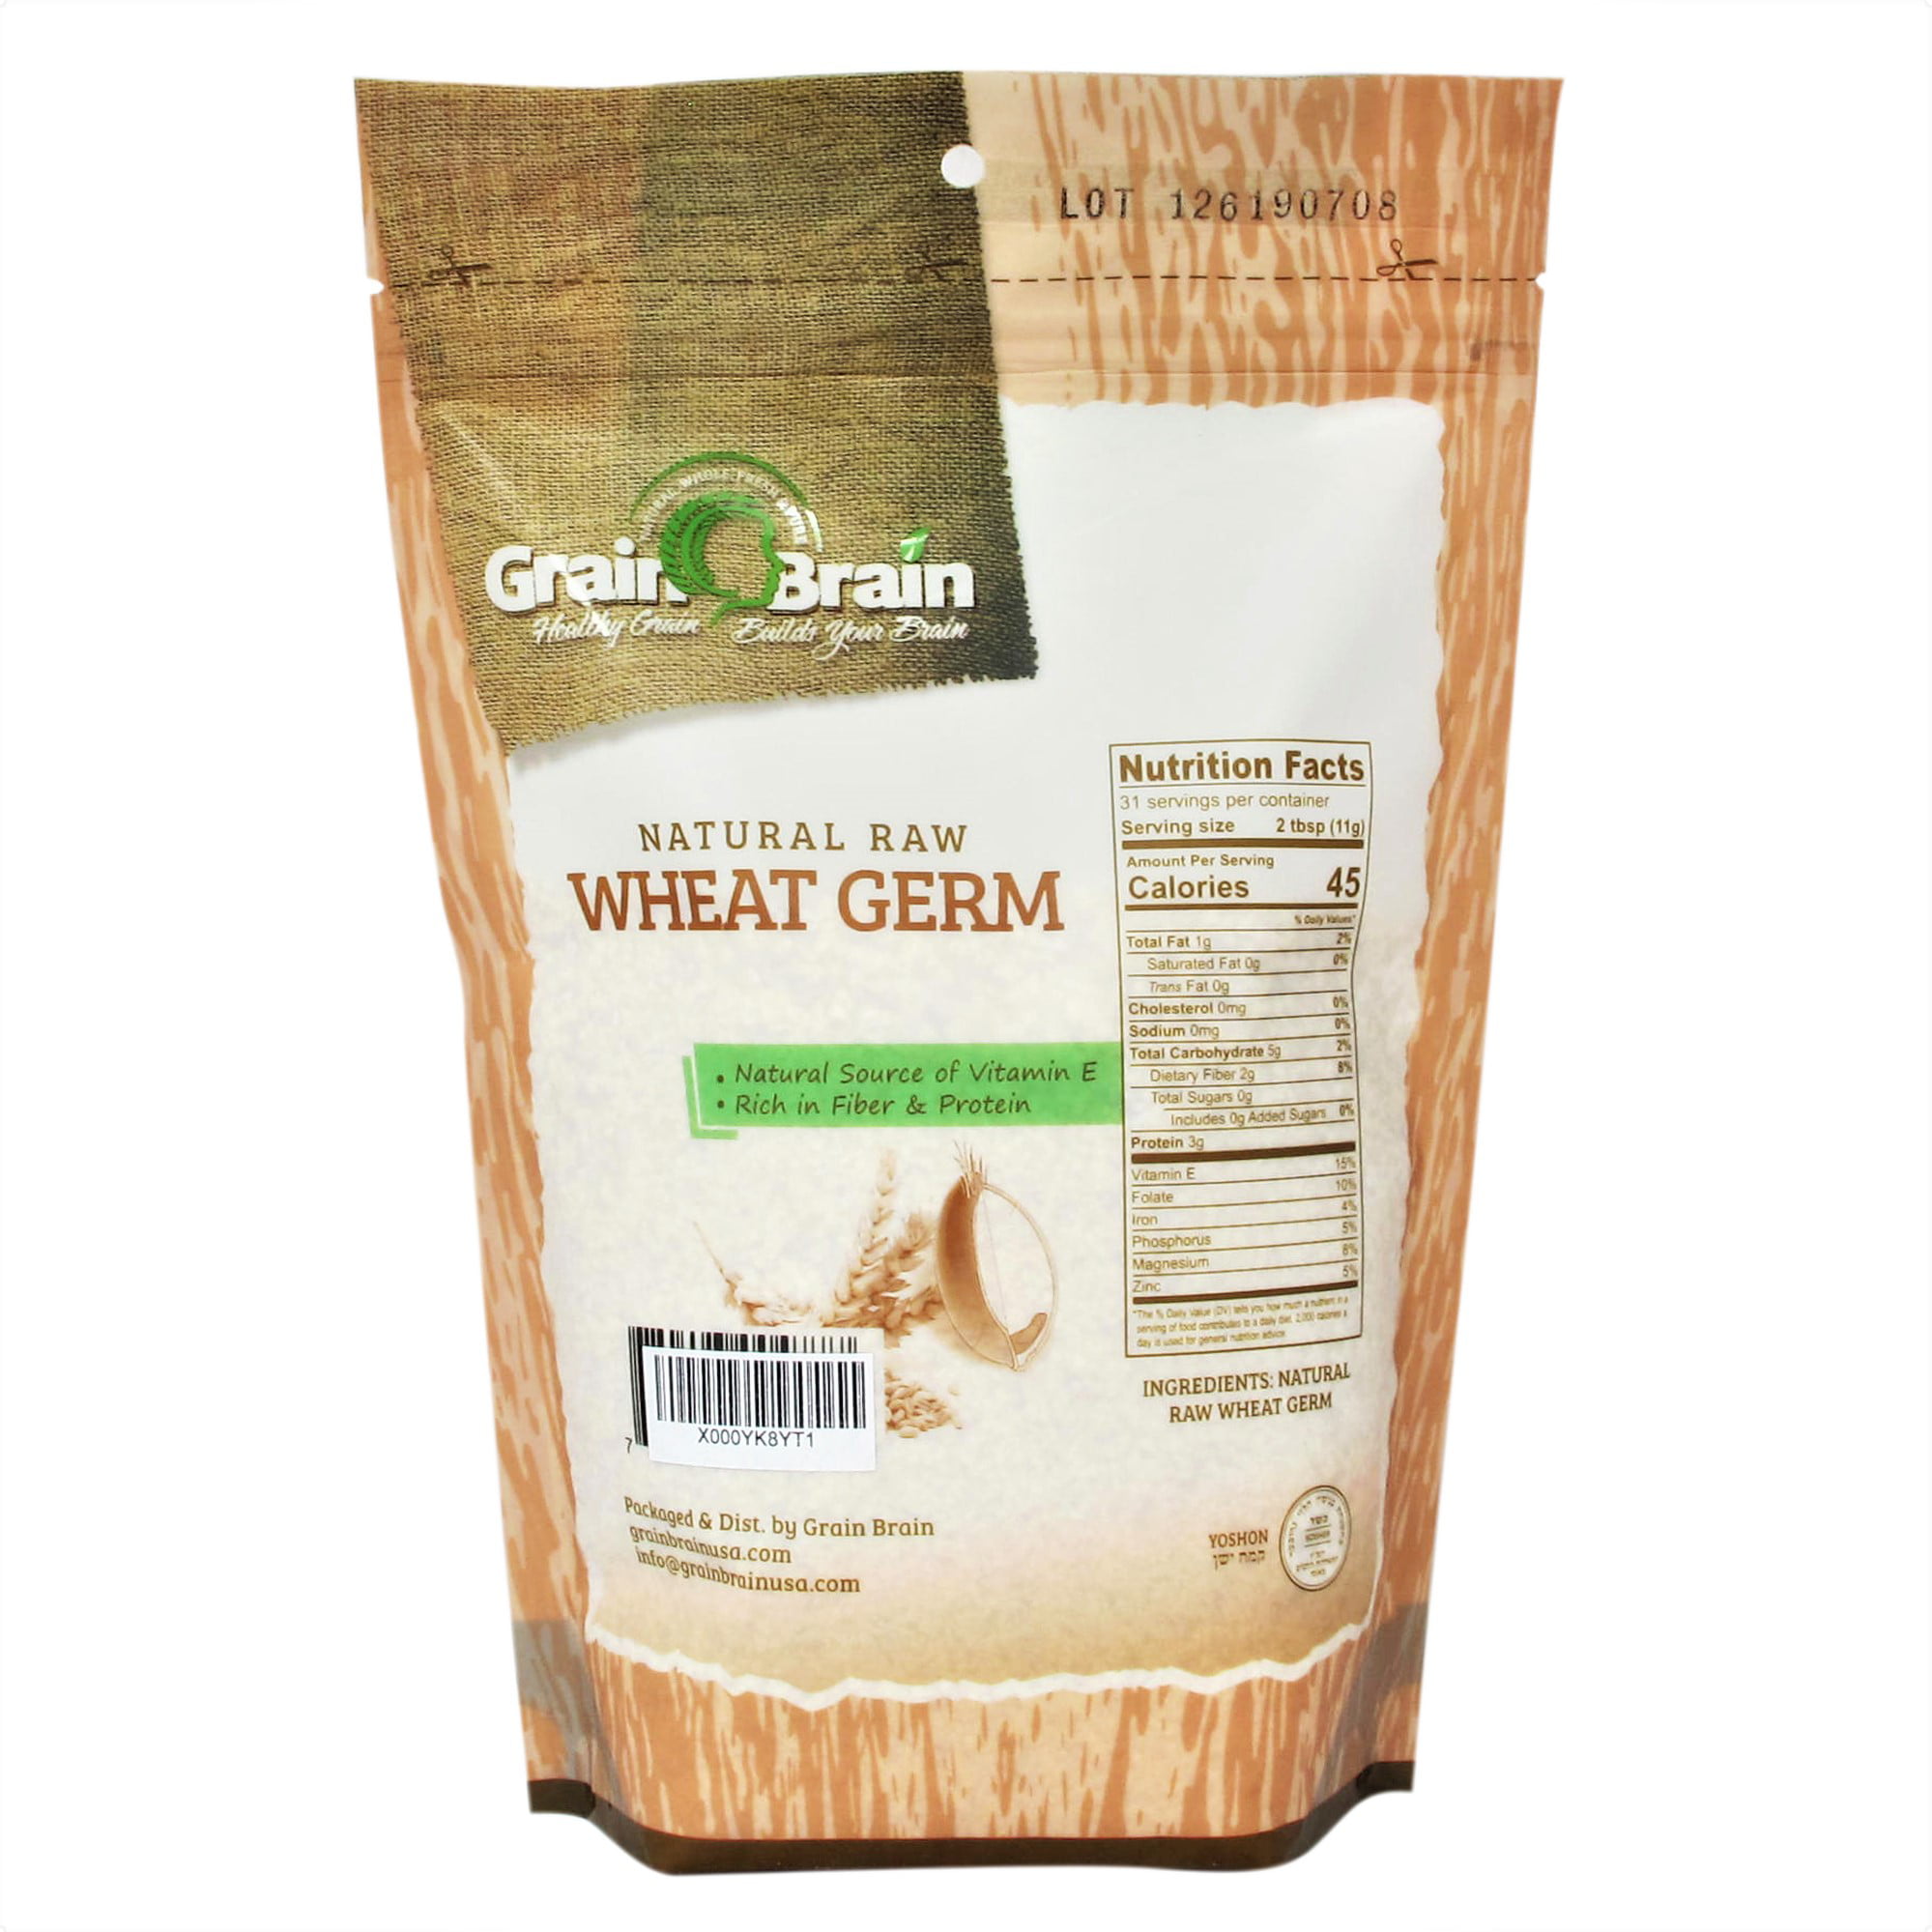 Grain Brain Germen de trigo de 12 oz (12 onzas) crudo, totalmente natural,  sin tostar. Empaquetado en bolsas resellables para un uso fácil